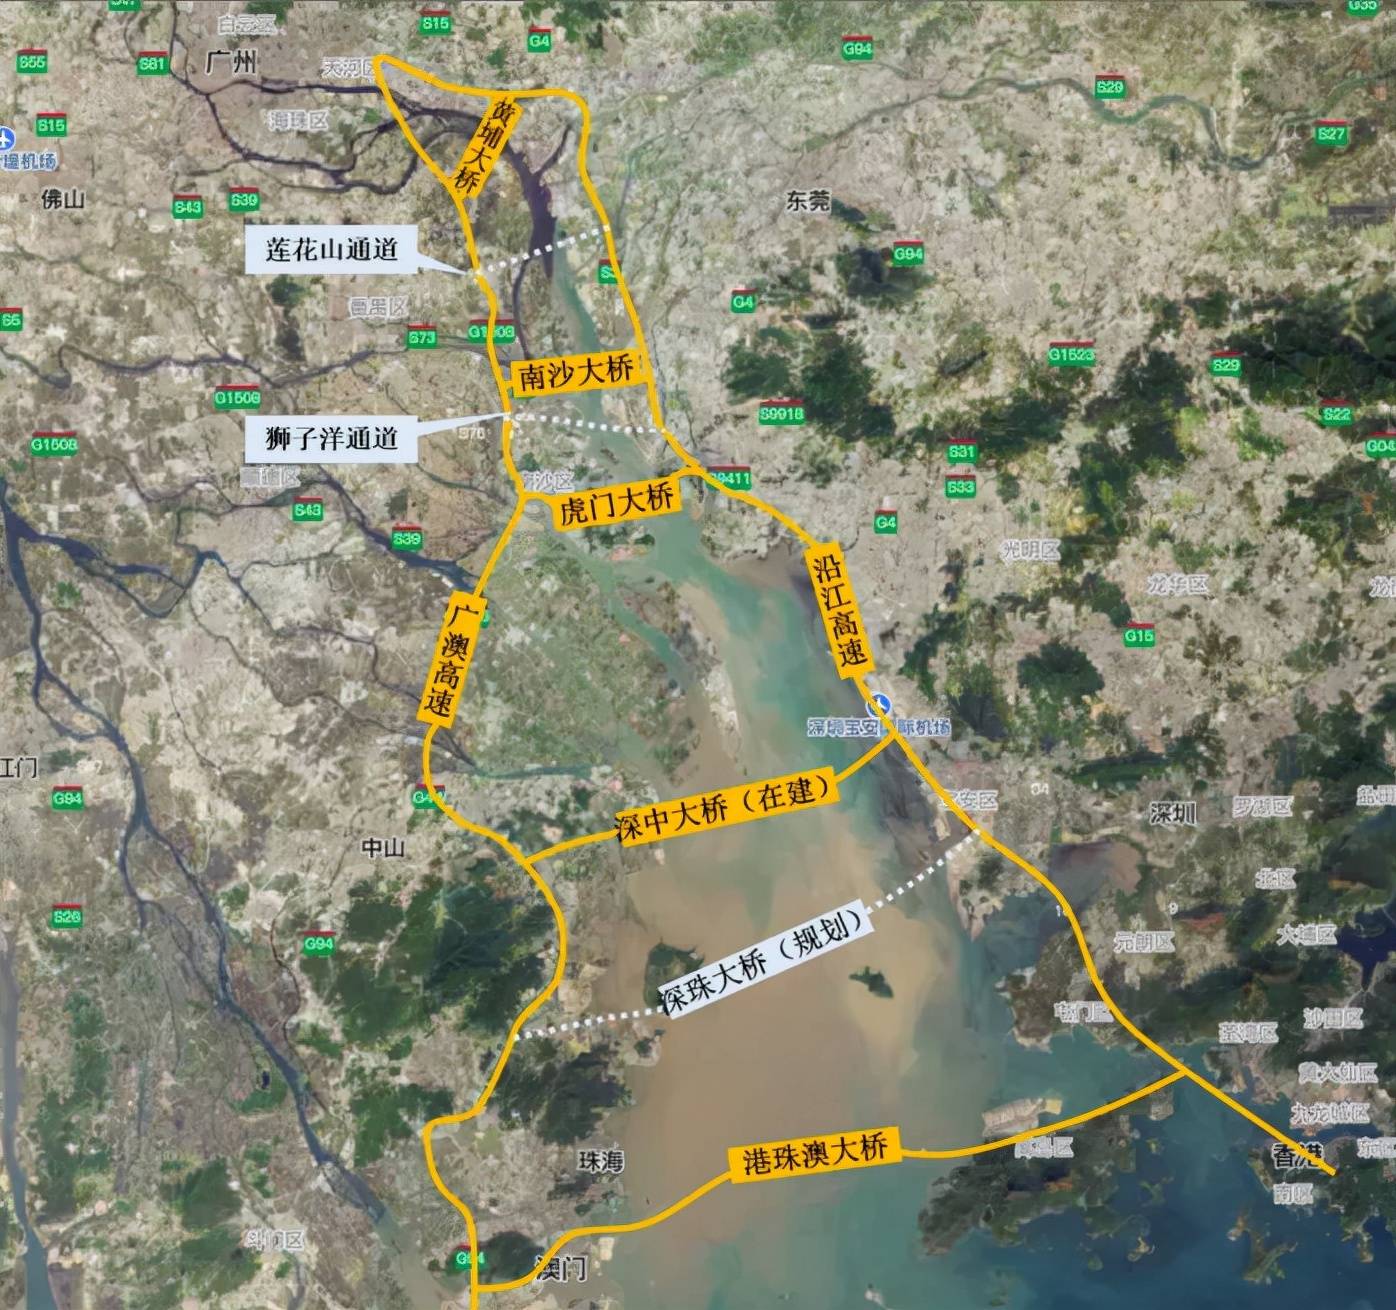 东莞狮子洋通道最新进展:预计年底动工,2027年通车,总投资504亿元!